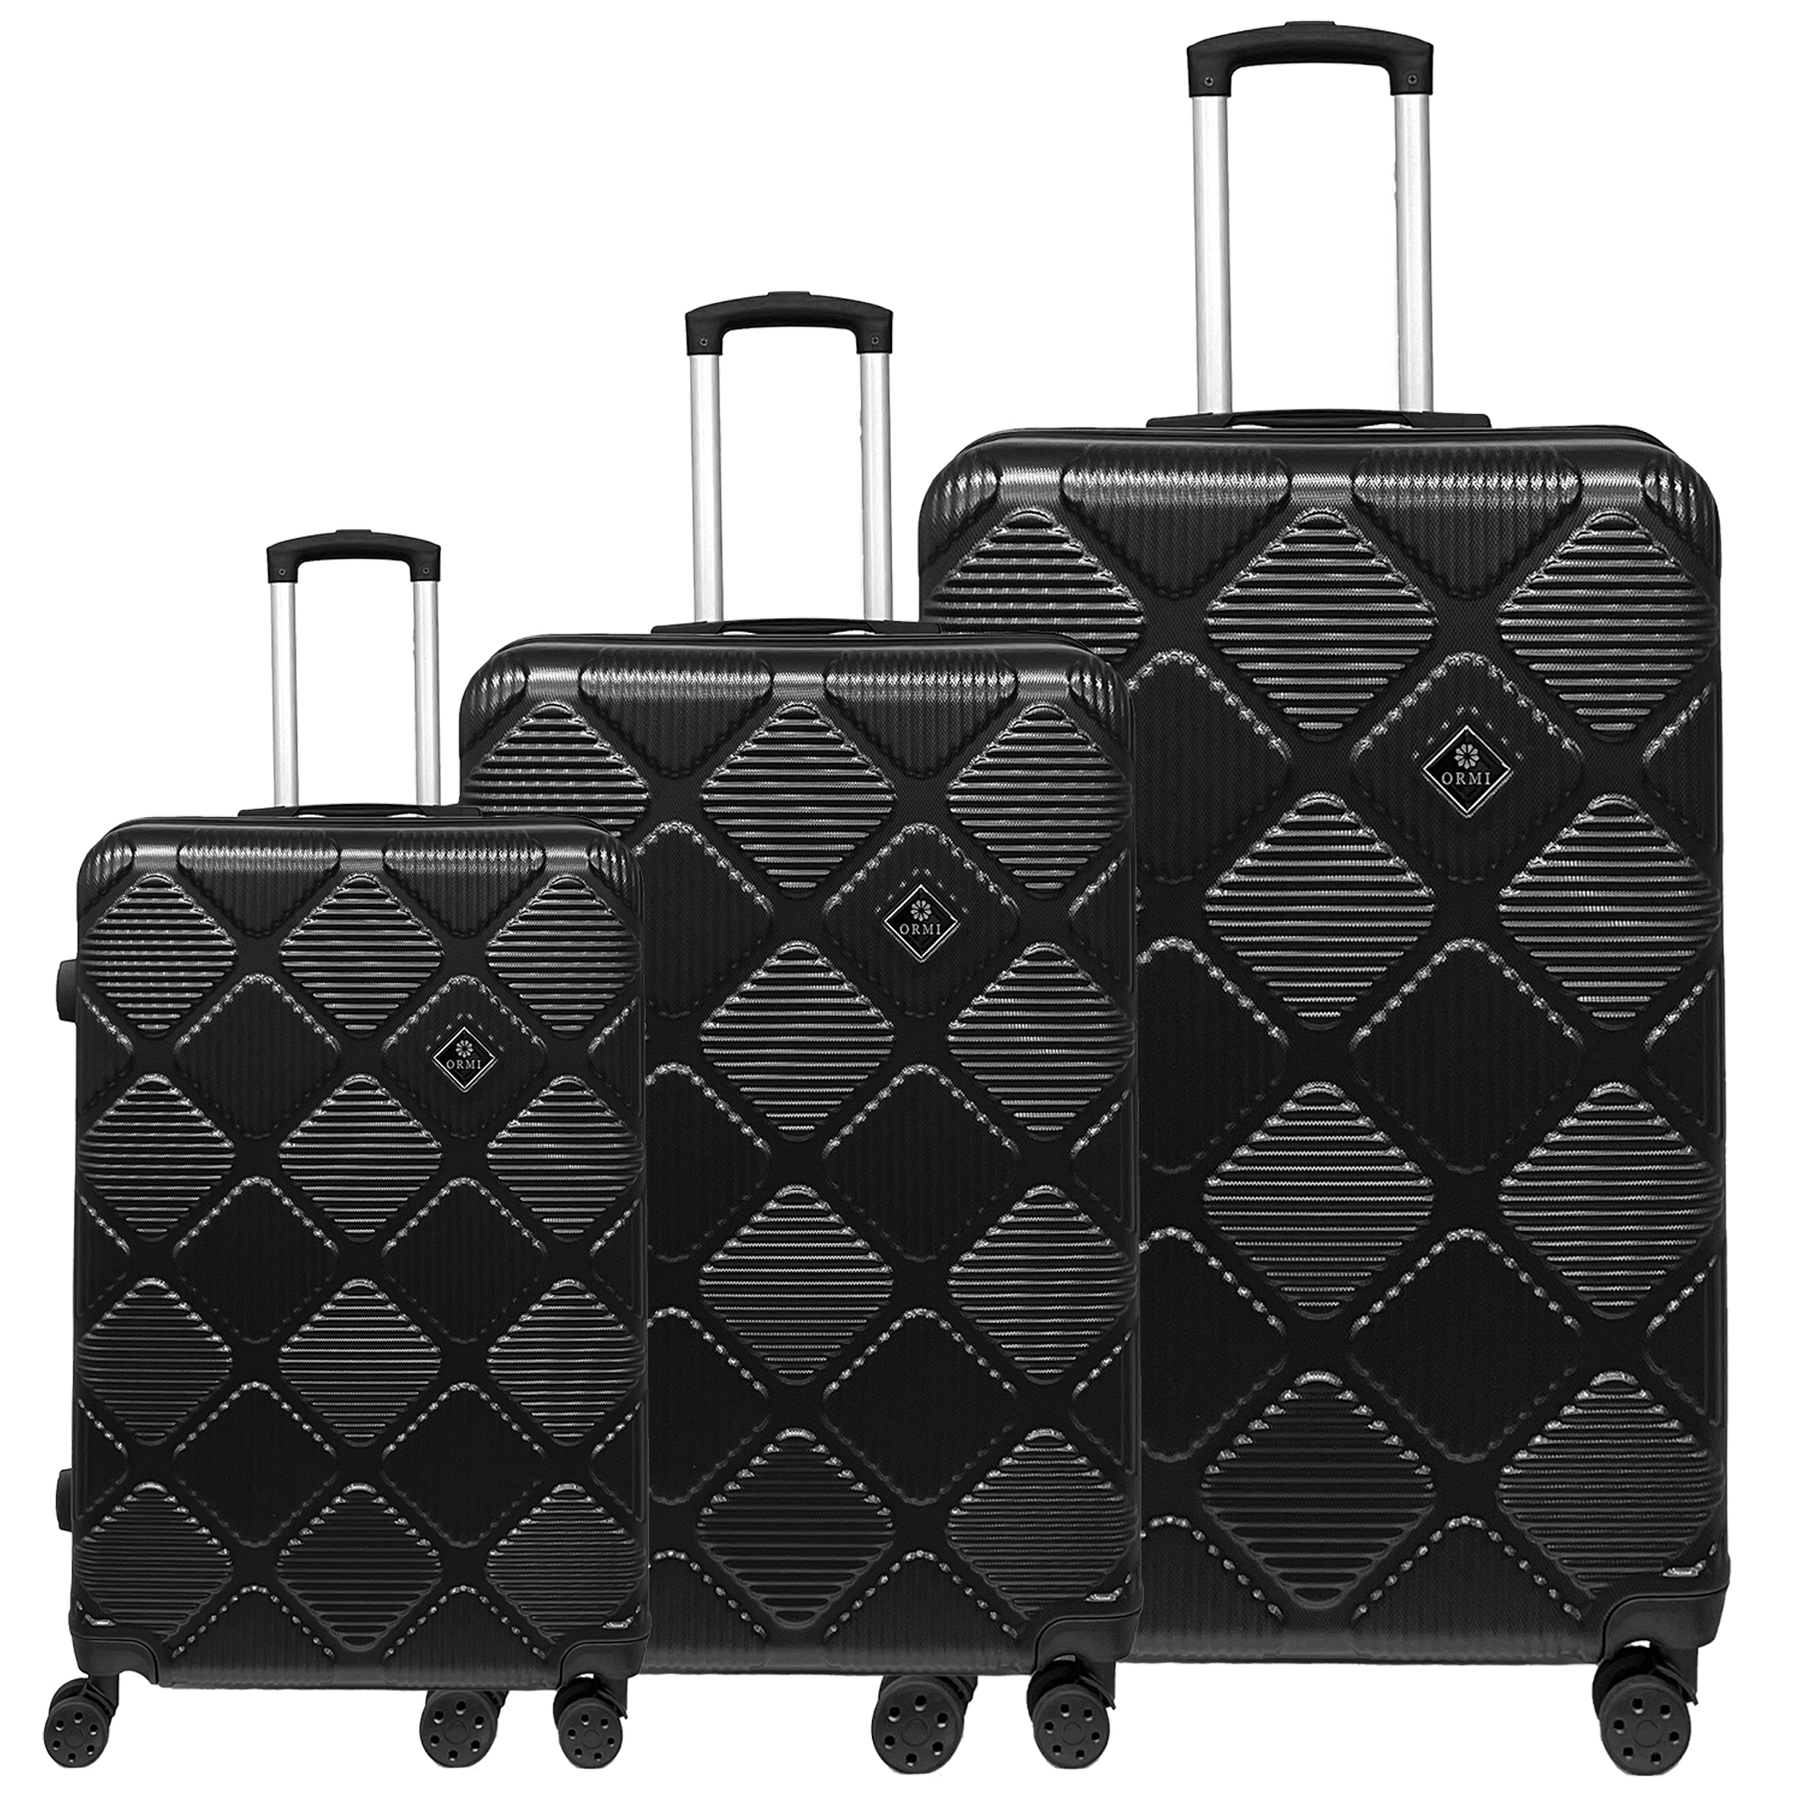 Zestaw 3 walizek na kółkach Ormi WavyLine z tworzywa ABS - Mała, Średnia i Duża, ultralekka